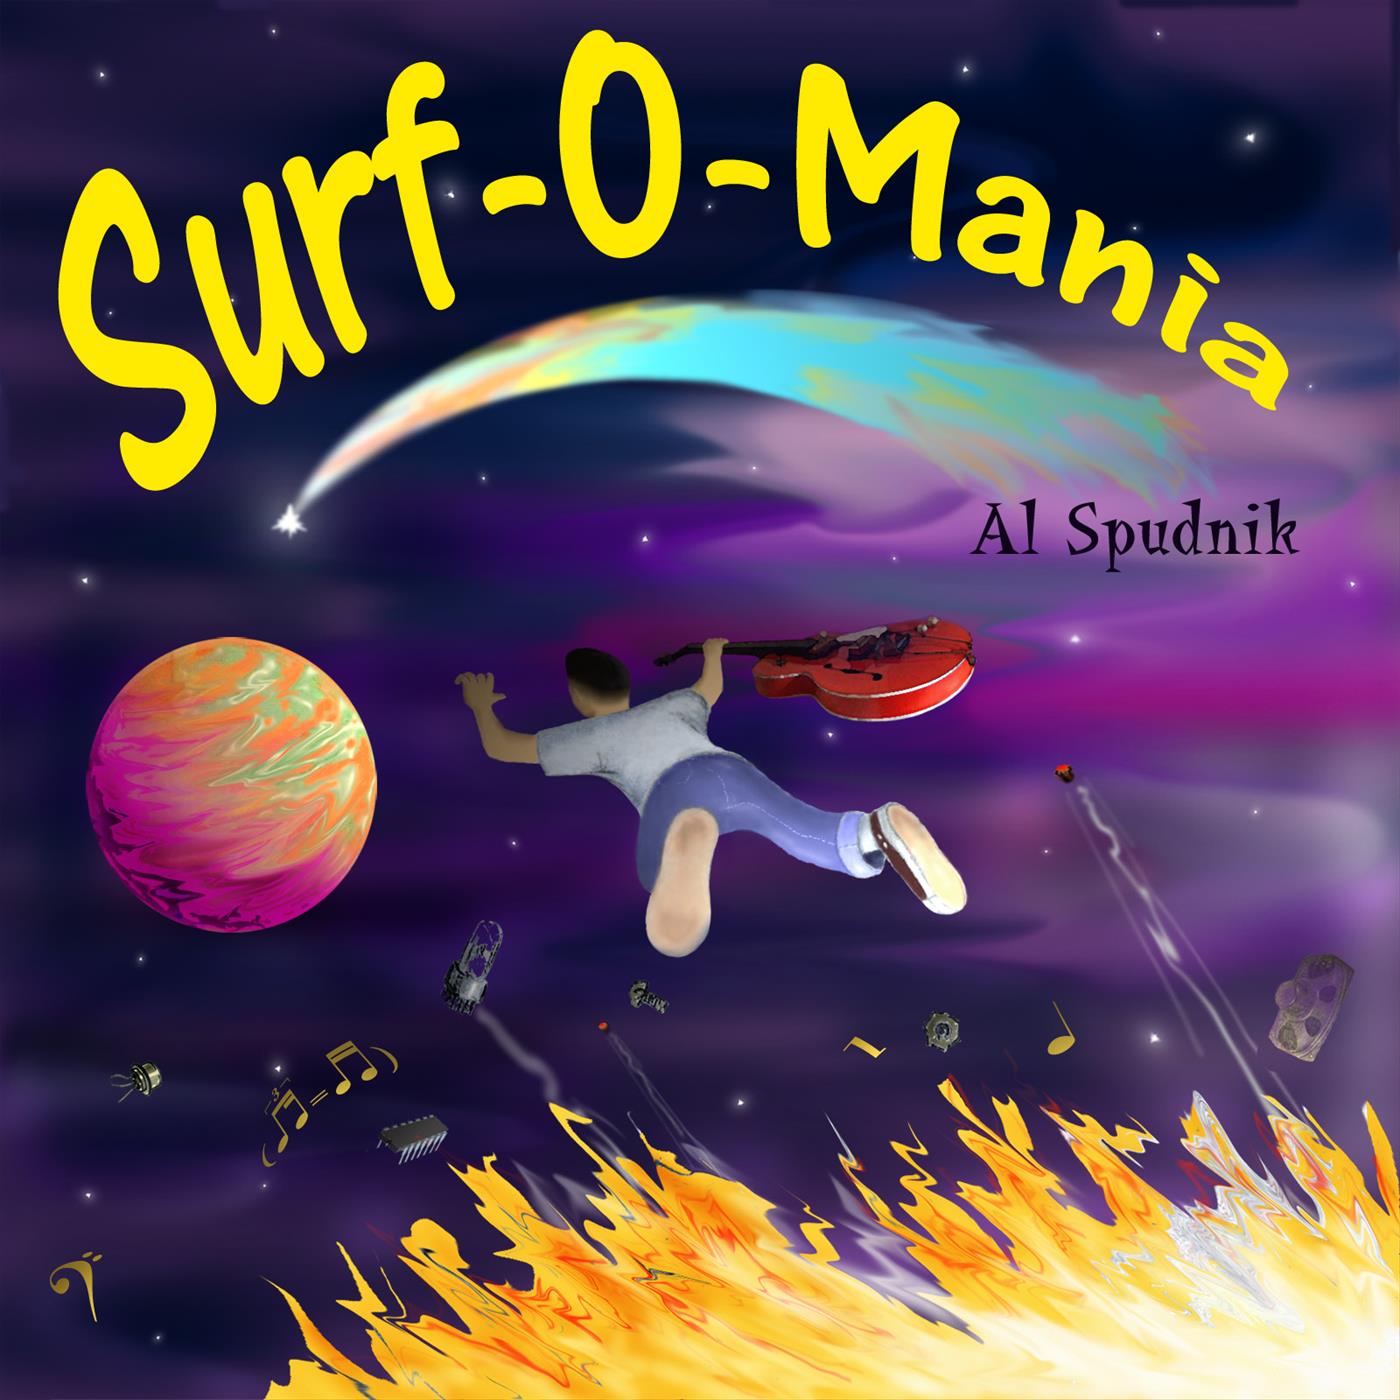 Surf-O-Mania